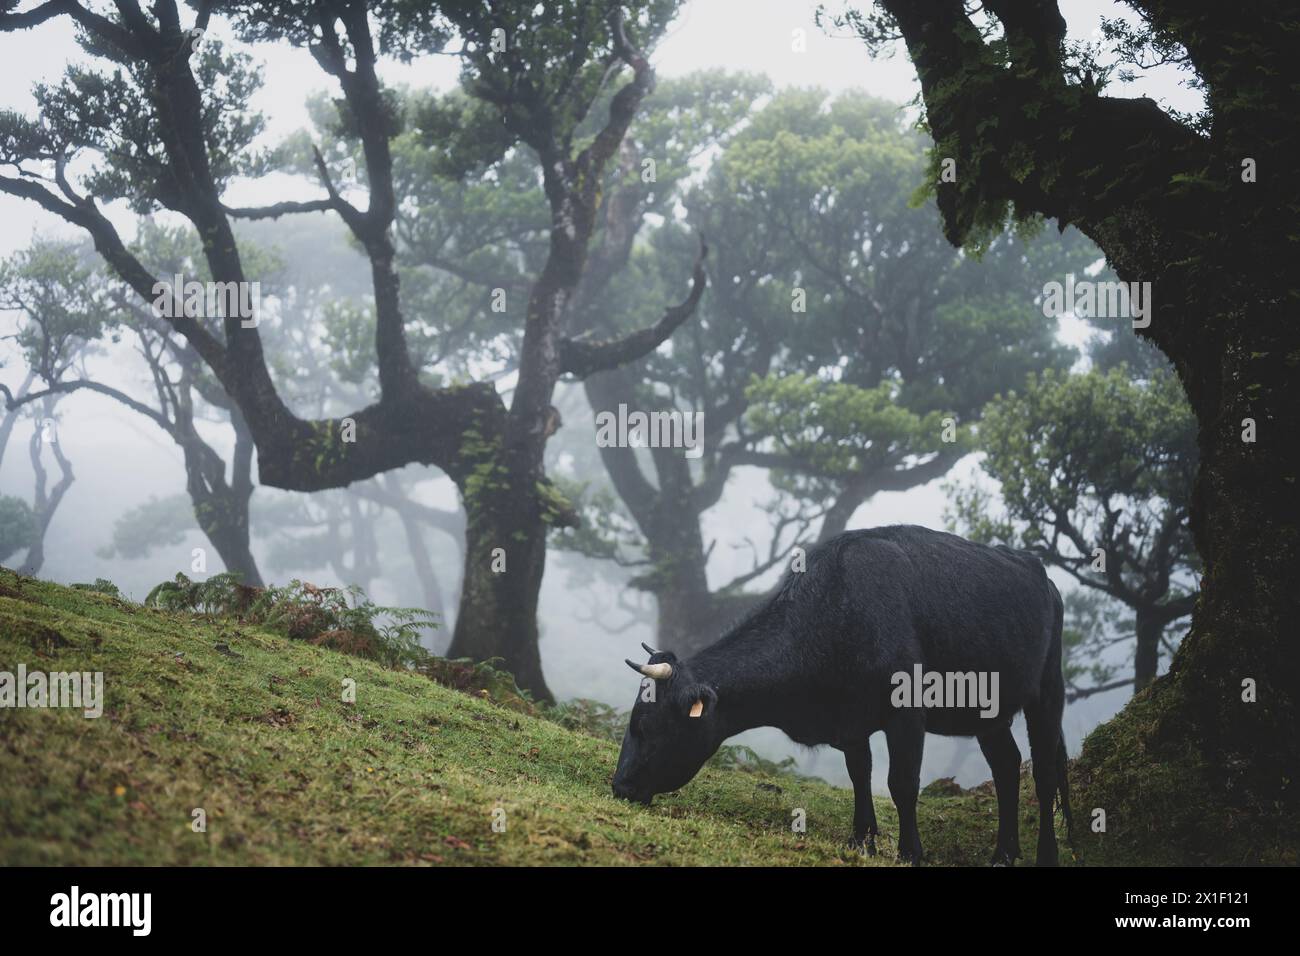 Beschreibung: Schwarze Kuh grasen auf einem grasbewachsenen Hügel in mystischem Nebelwald mit riesigen Lorbeerbäumen. Fanal Forest, Madeira Island, Portugal, Europa. Stockfoto